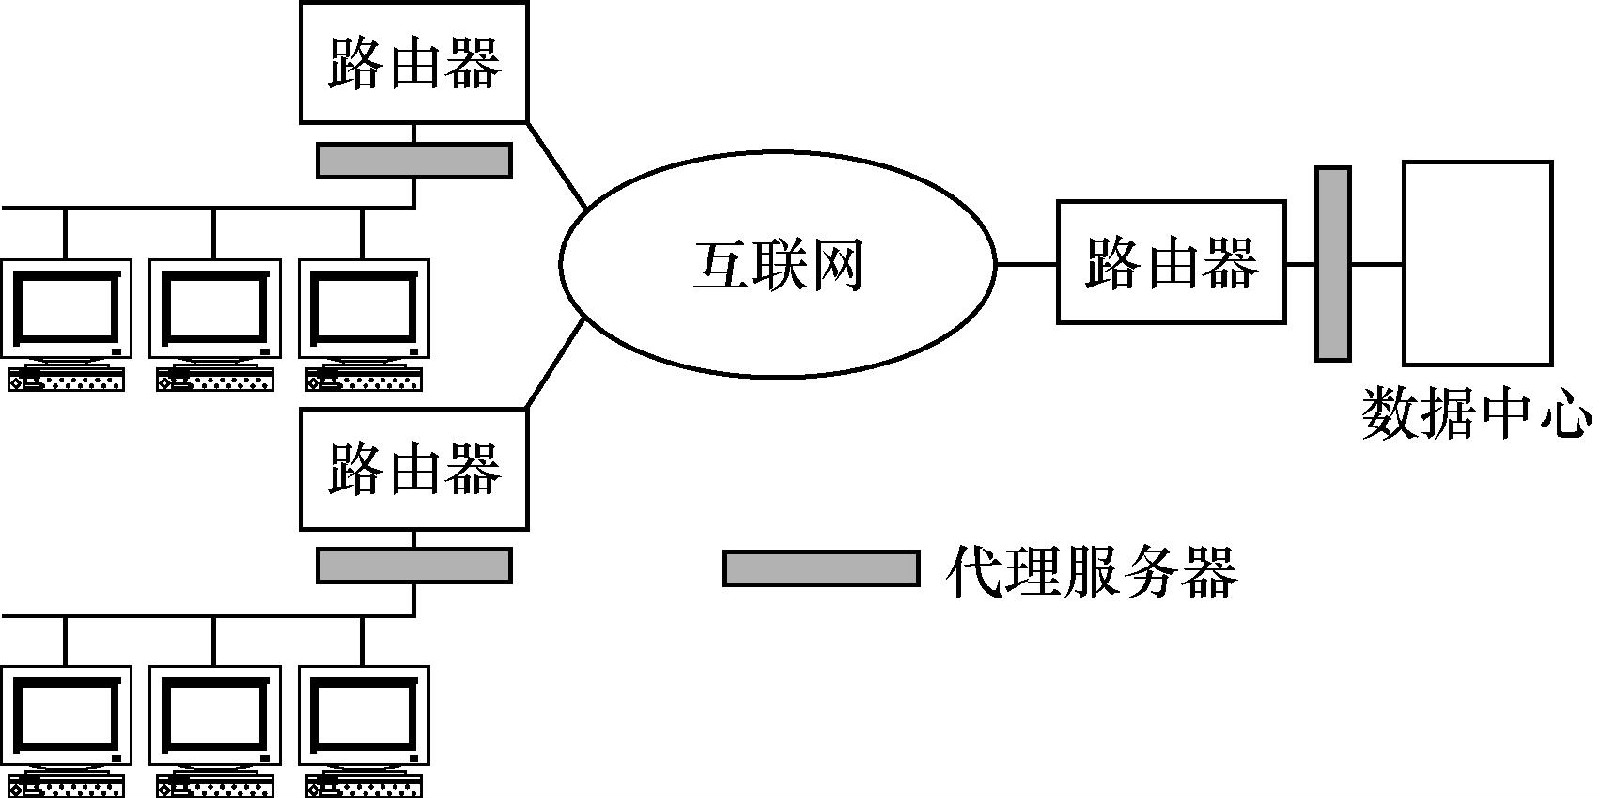 圖5－3  廣域網數據伺服器方案